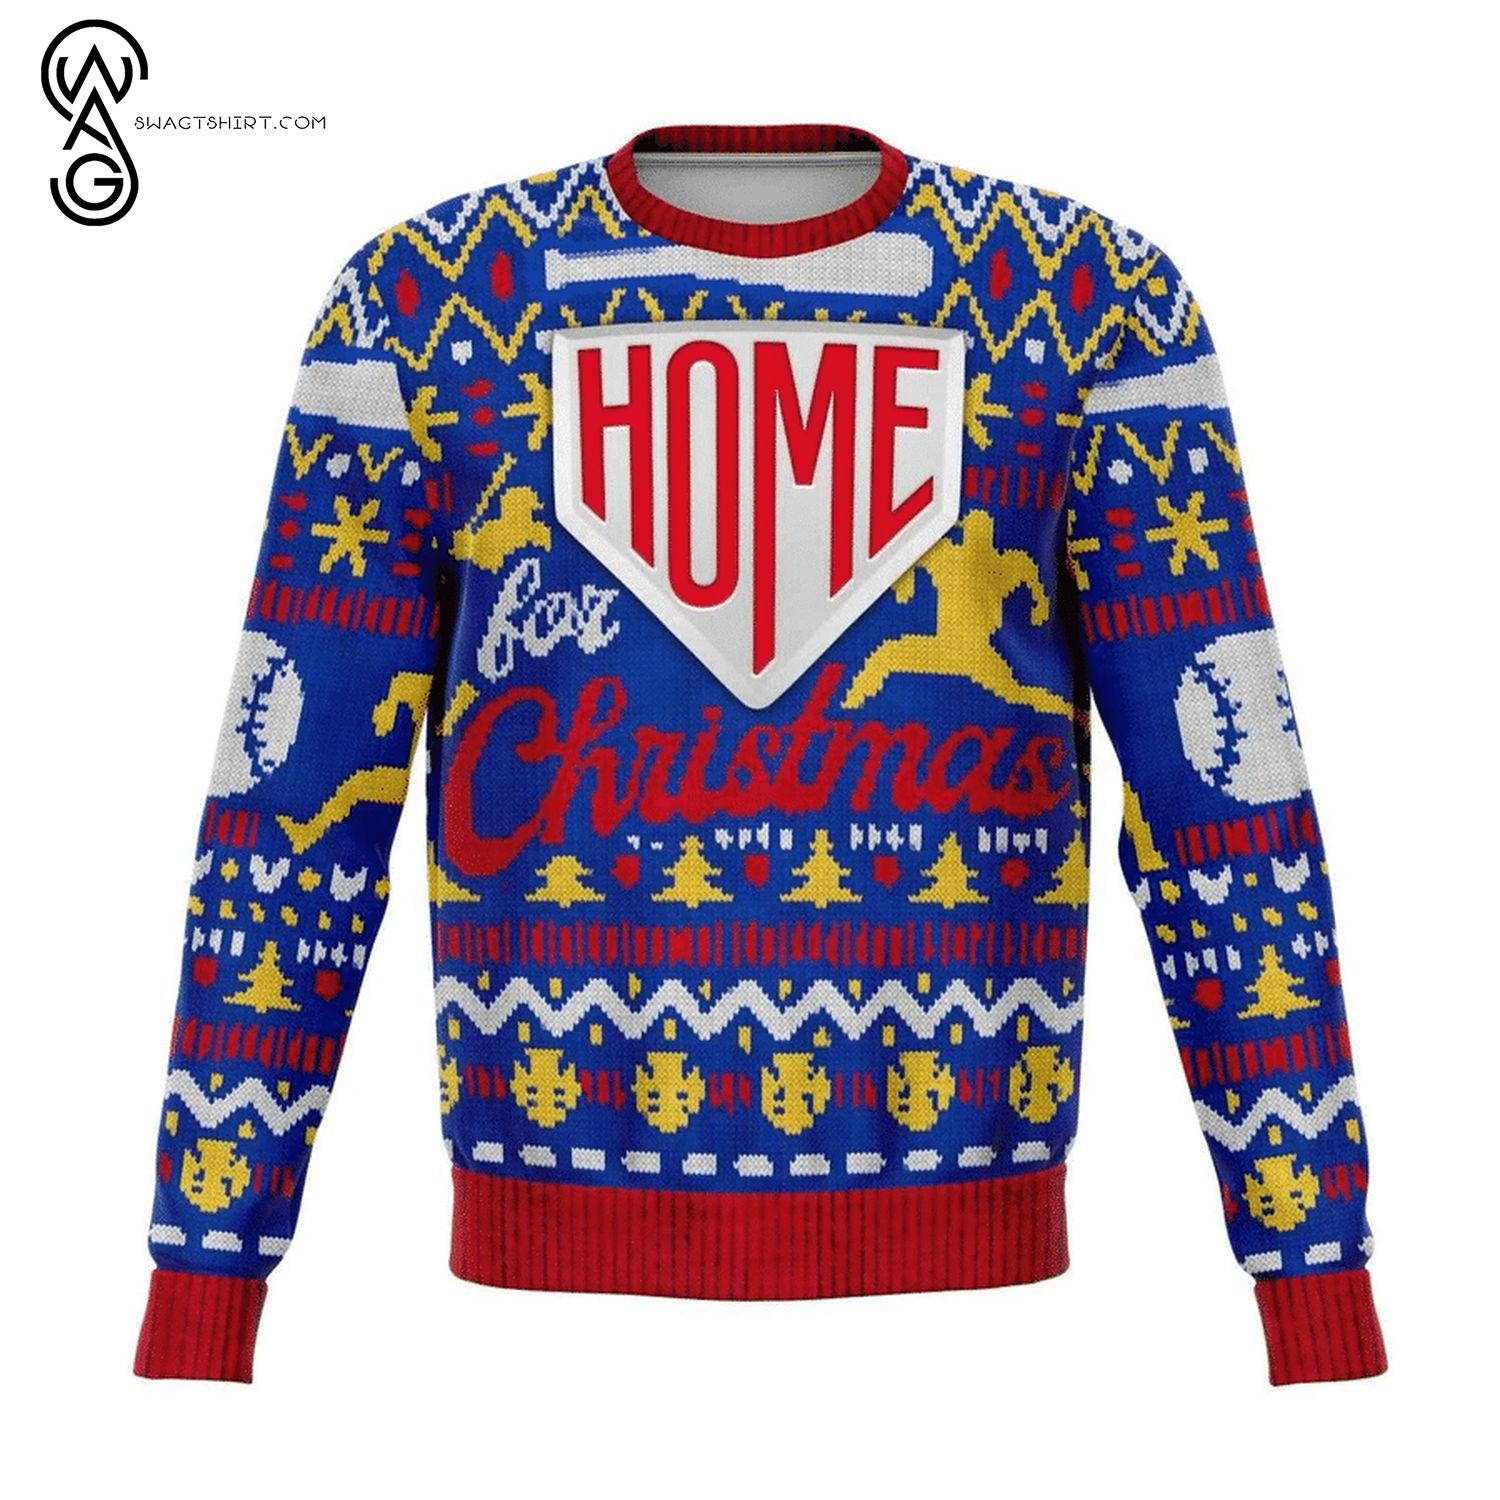 Softball Home For Christmas Full Print Ugly Christmas Sweater